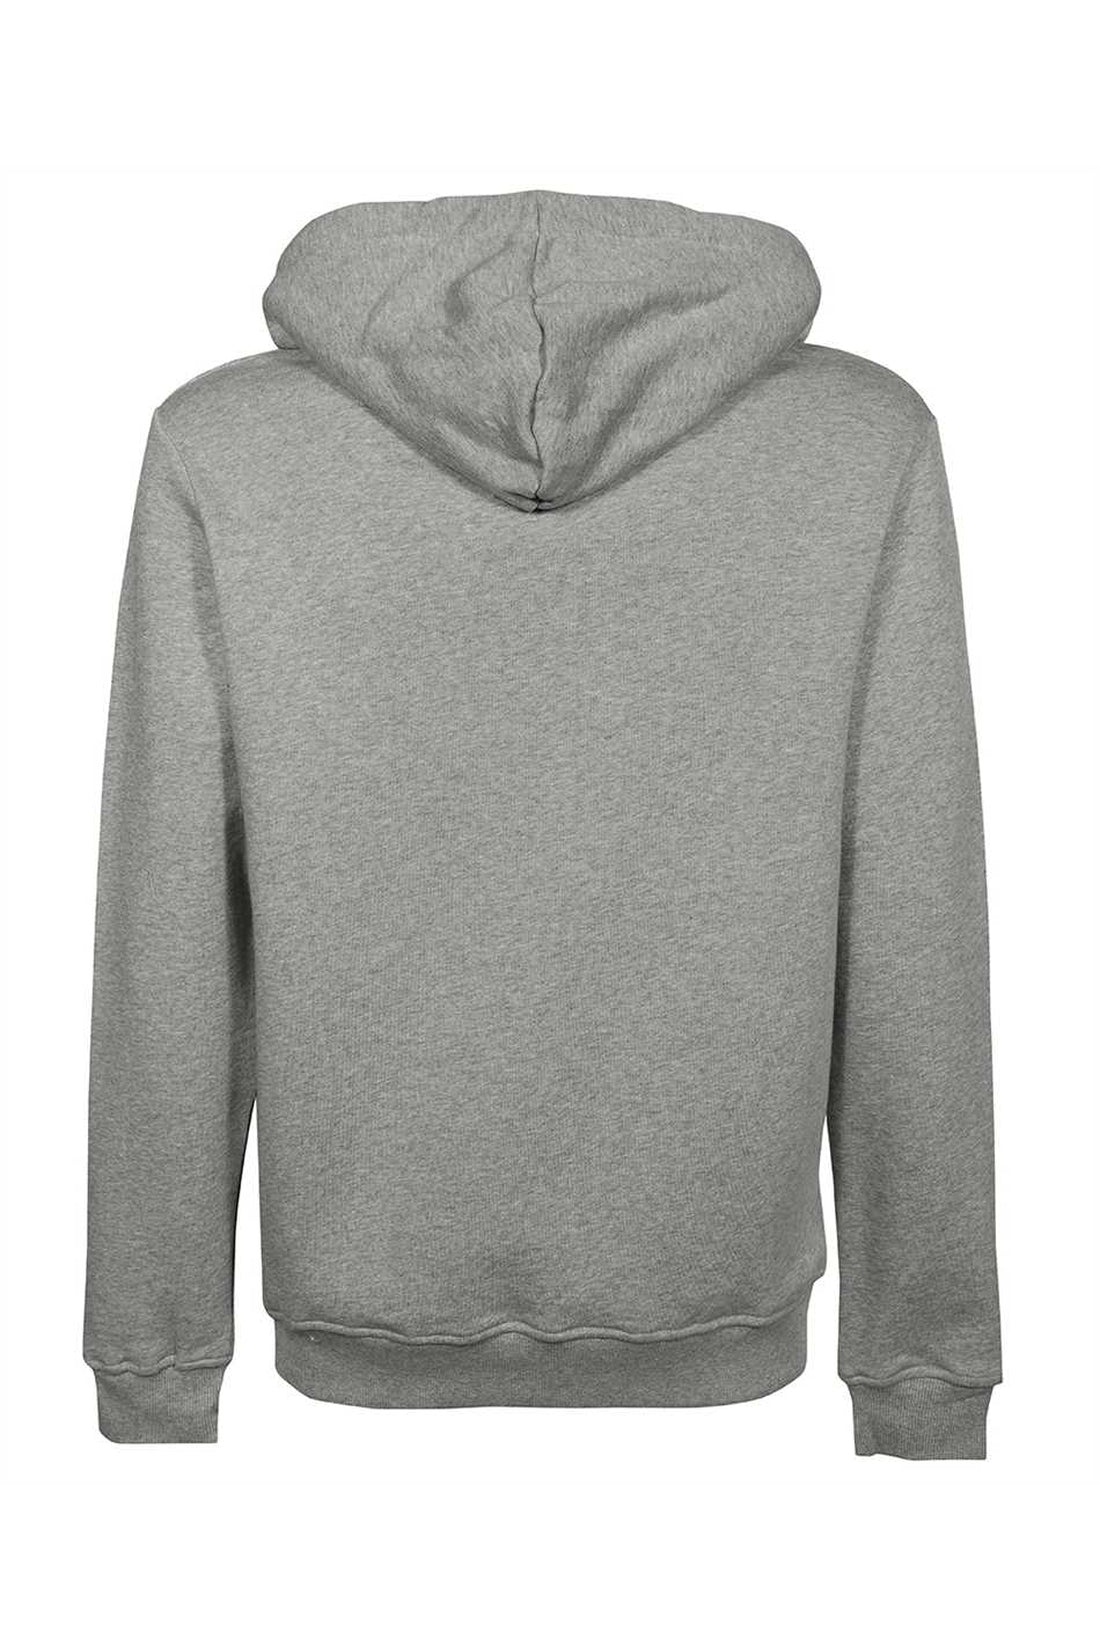 Les Deux-OUTLET-SALE-Hooded sweatshirt-ARCHIVIST